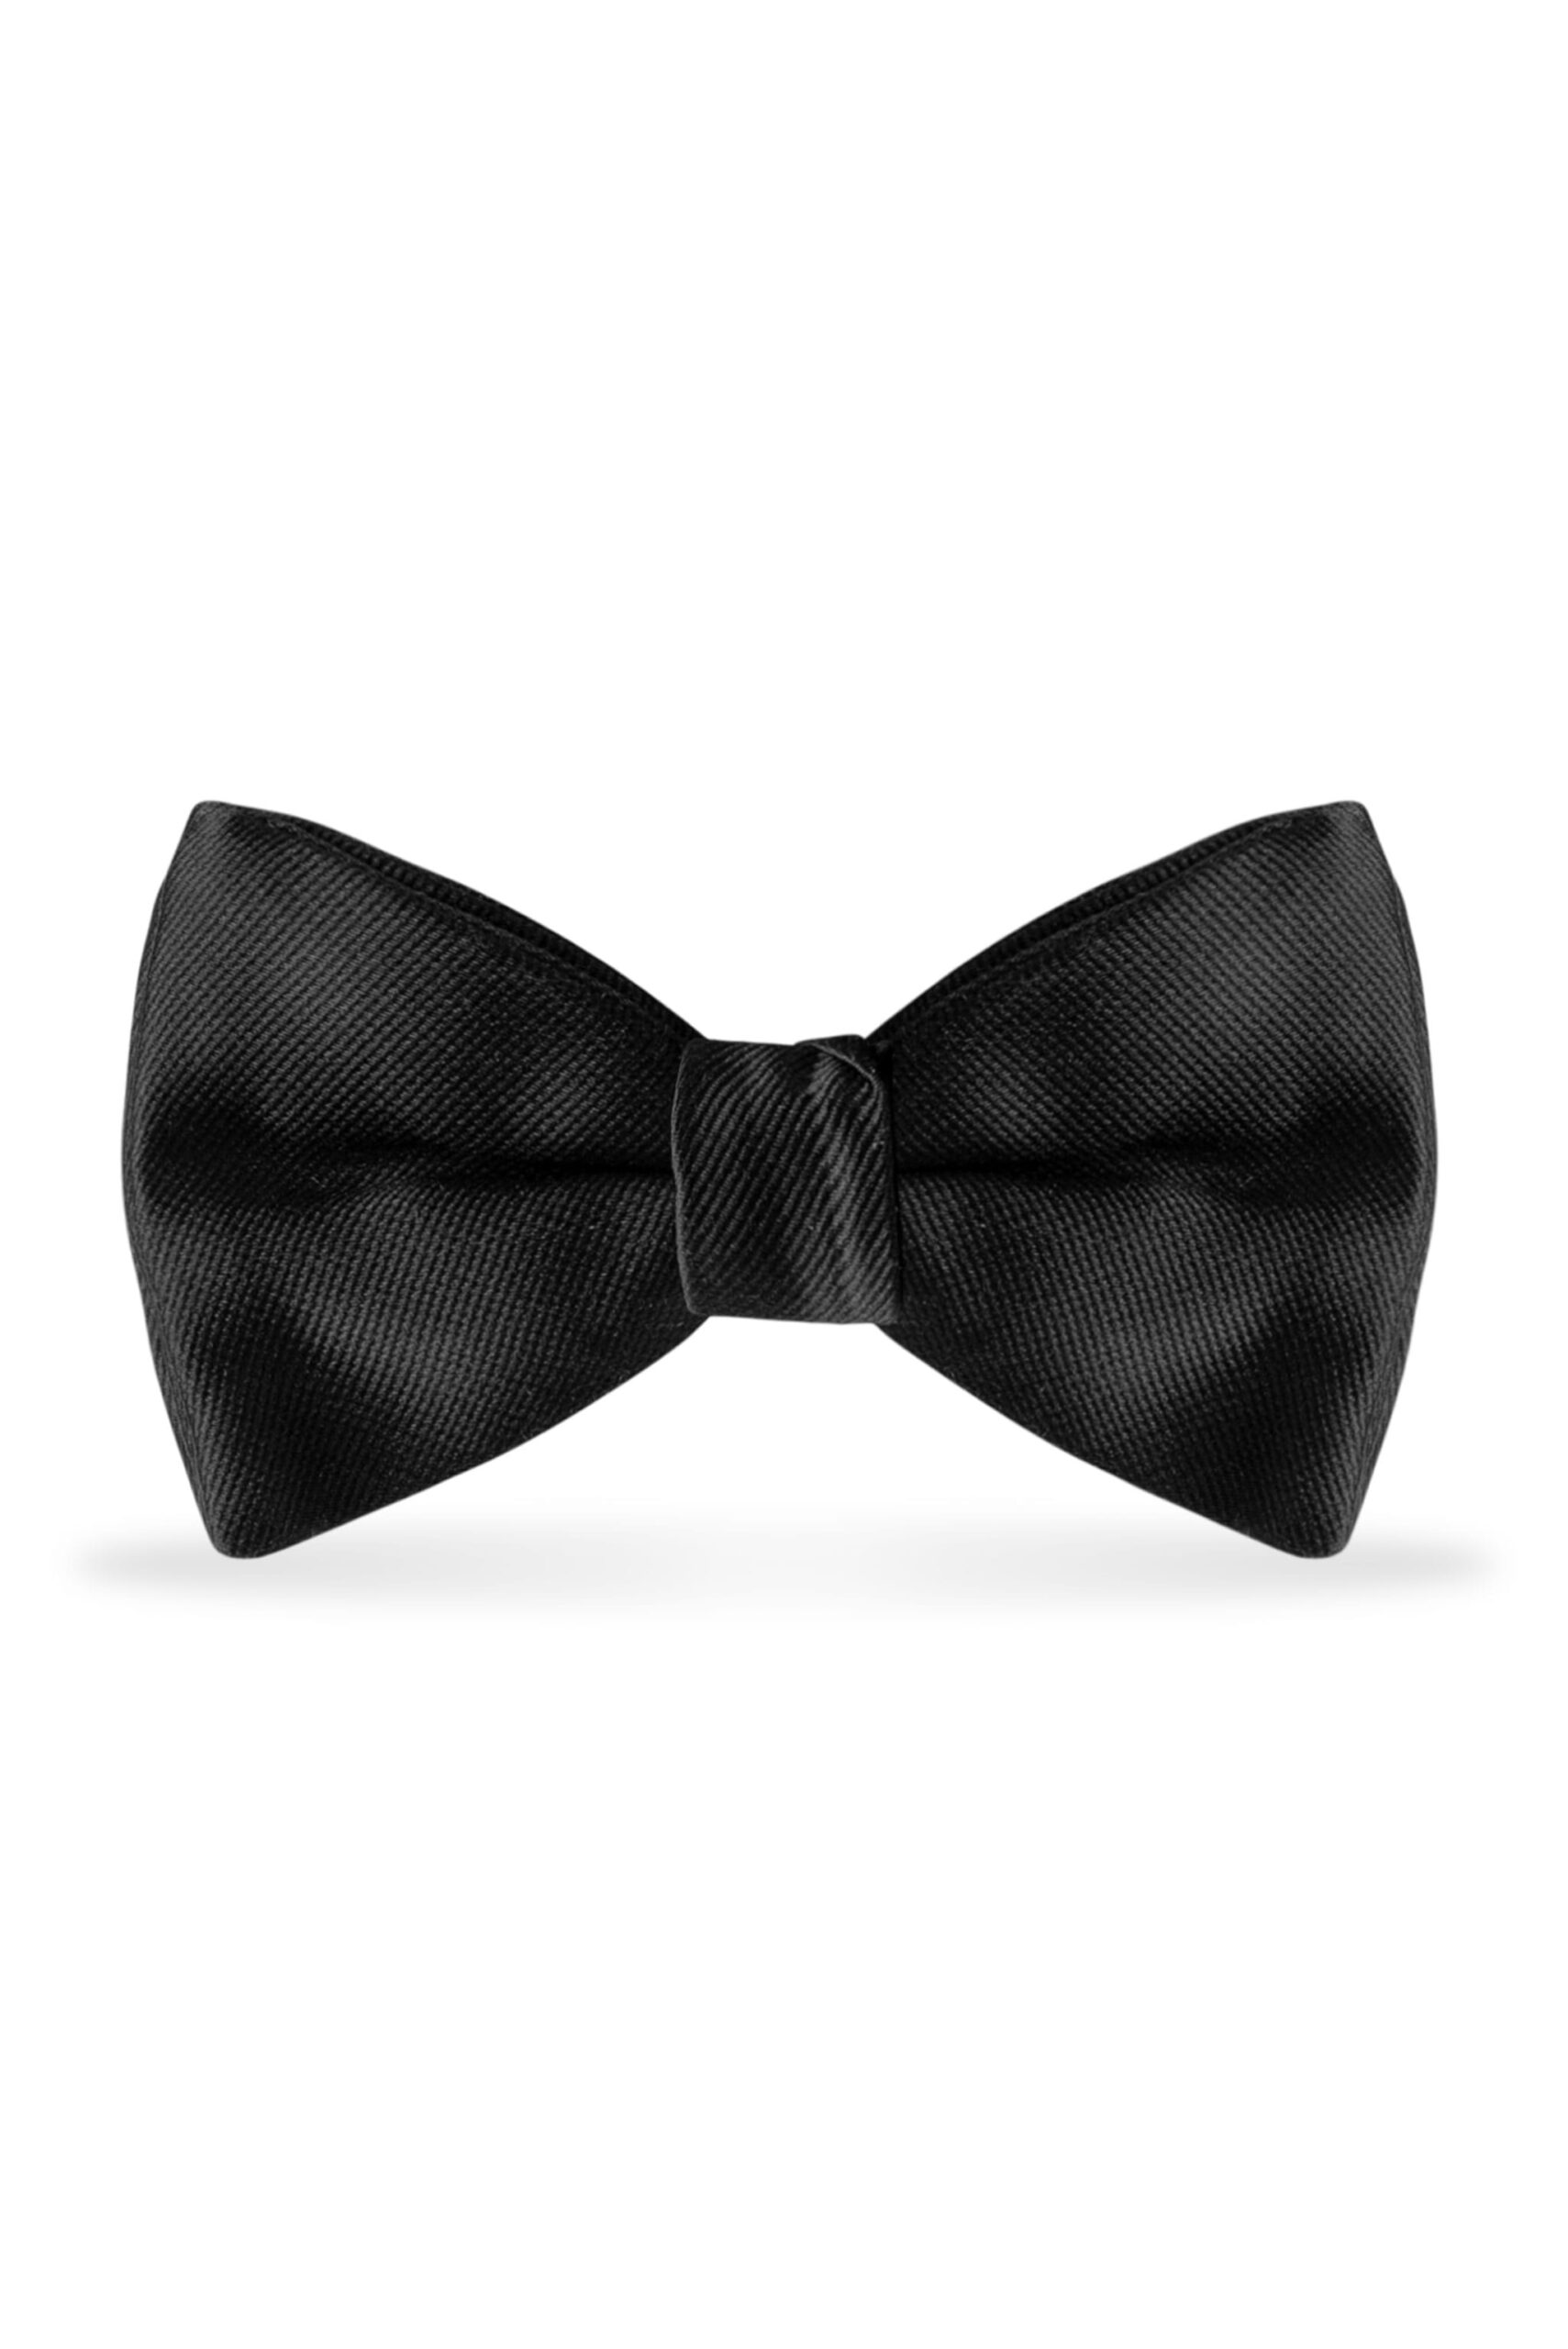 Solid Black Bow Tie 1